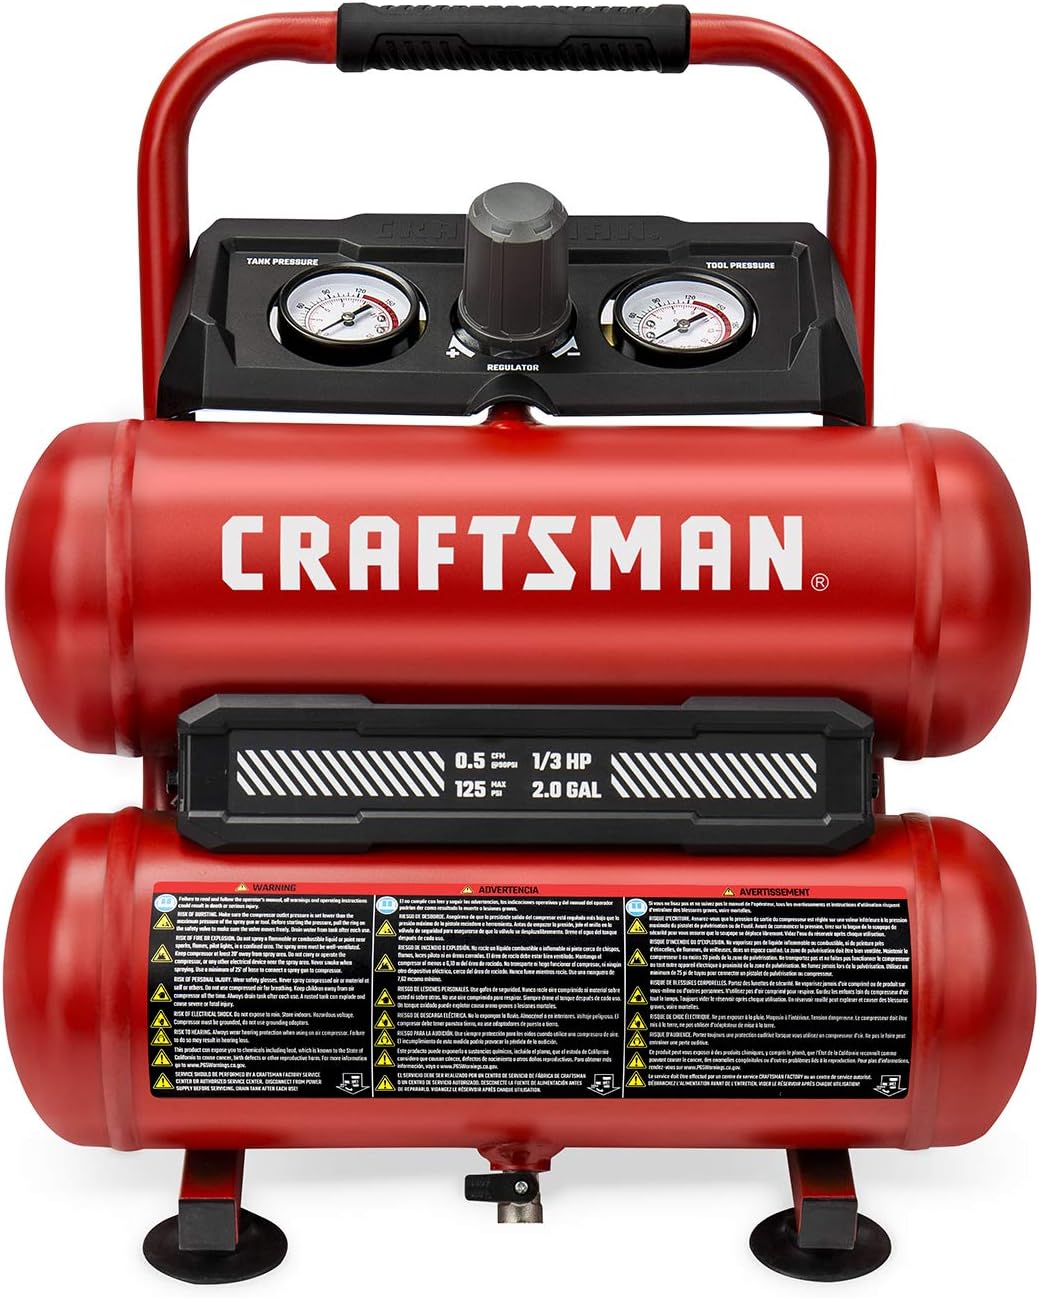 CRAFTSMAN Air Compressor, 2 Gallon Portable Air Compressor, Twin Tank, 1/3 HP Oil-Free Max 125 PSI Pressure, Model: CMXECXA0220242, Red : Tools  Home Improvement